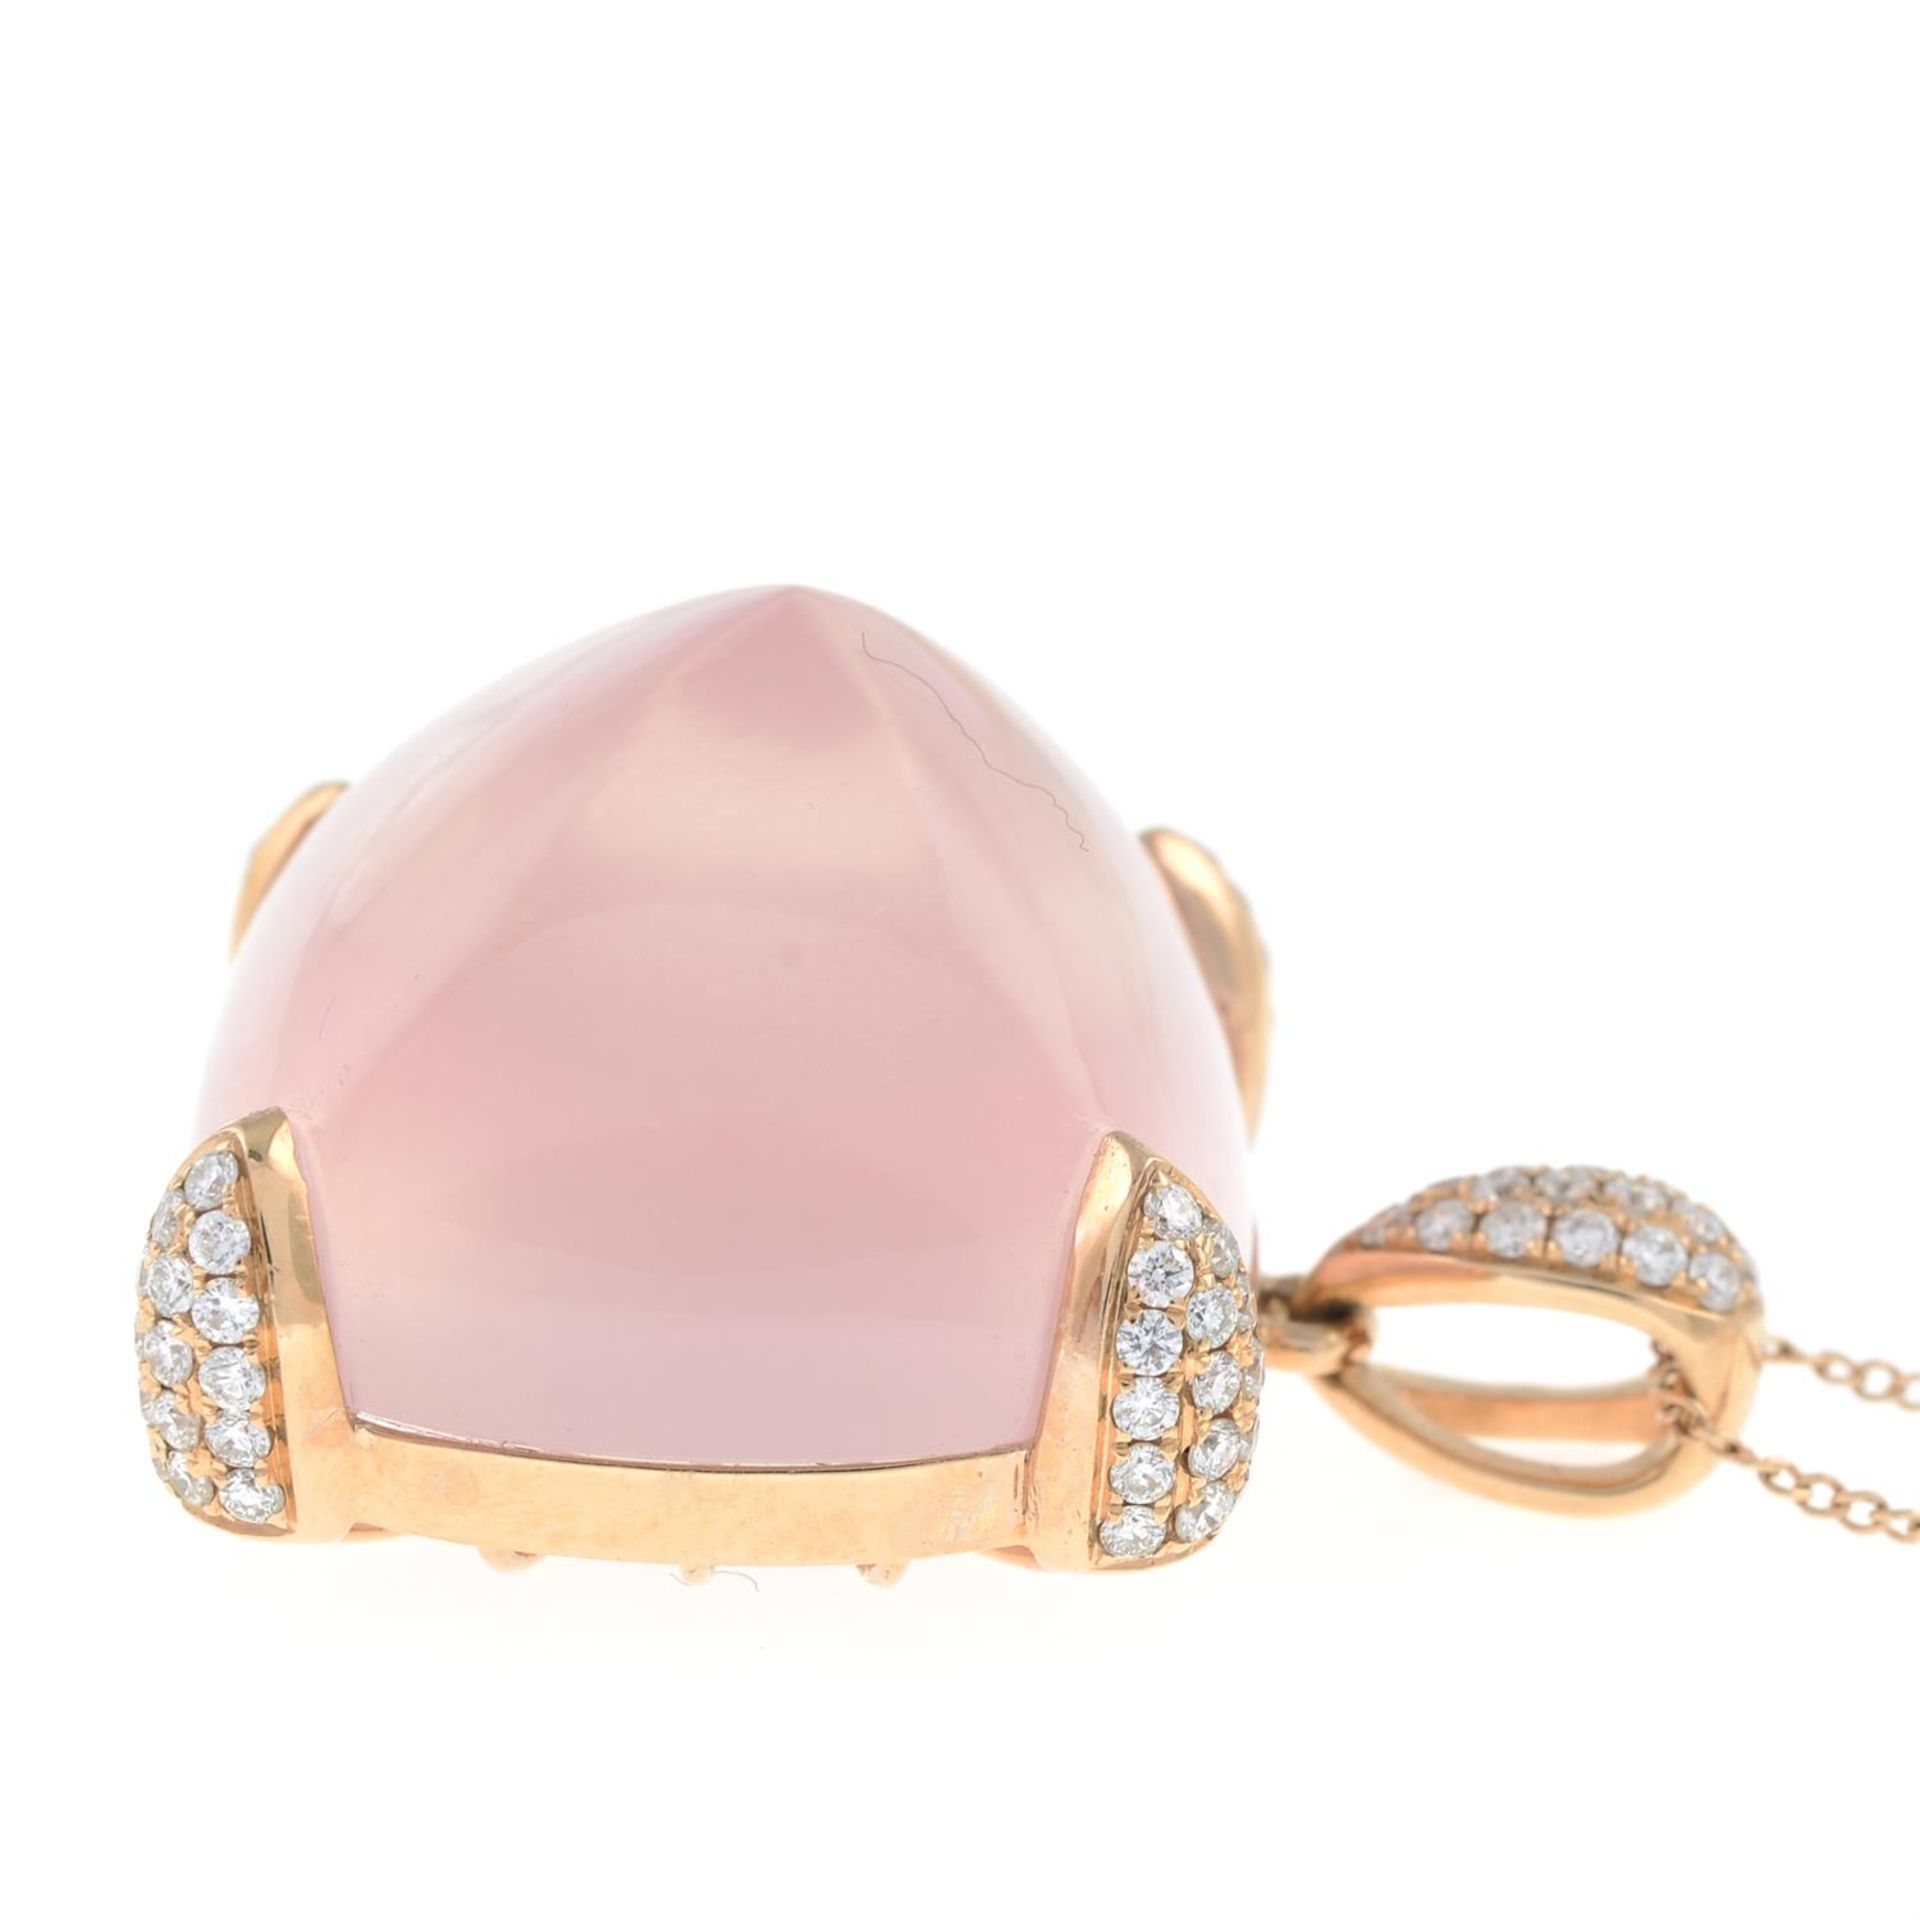 A rose quartz and pavé-set diamond pendant, with 18ct gold chain. - Bild 4 aus 6